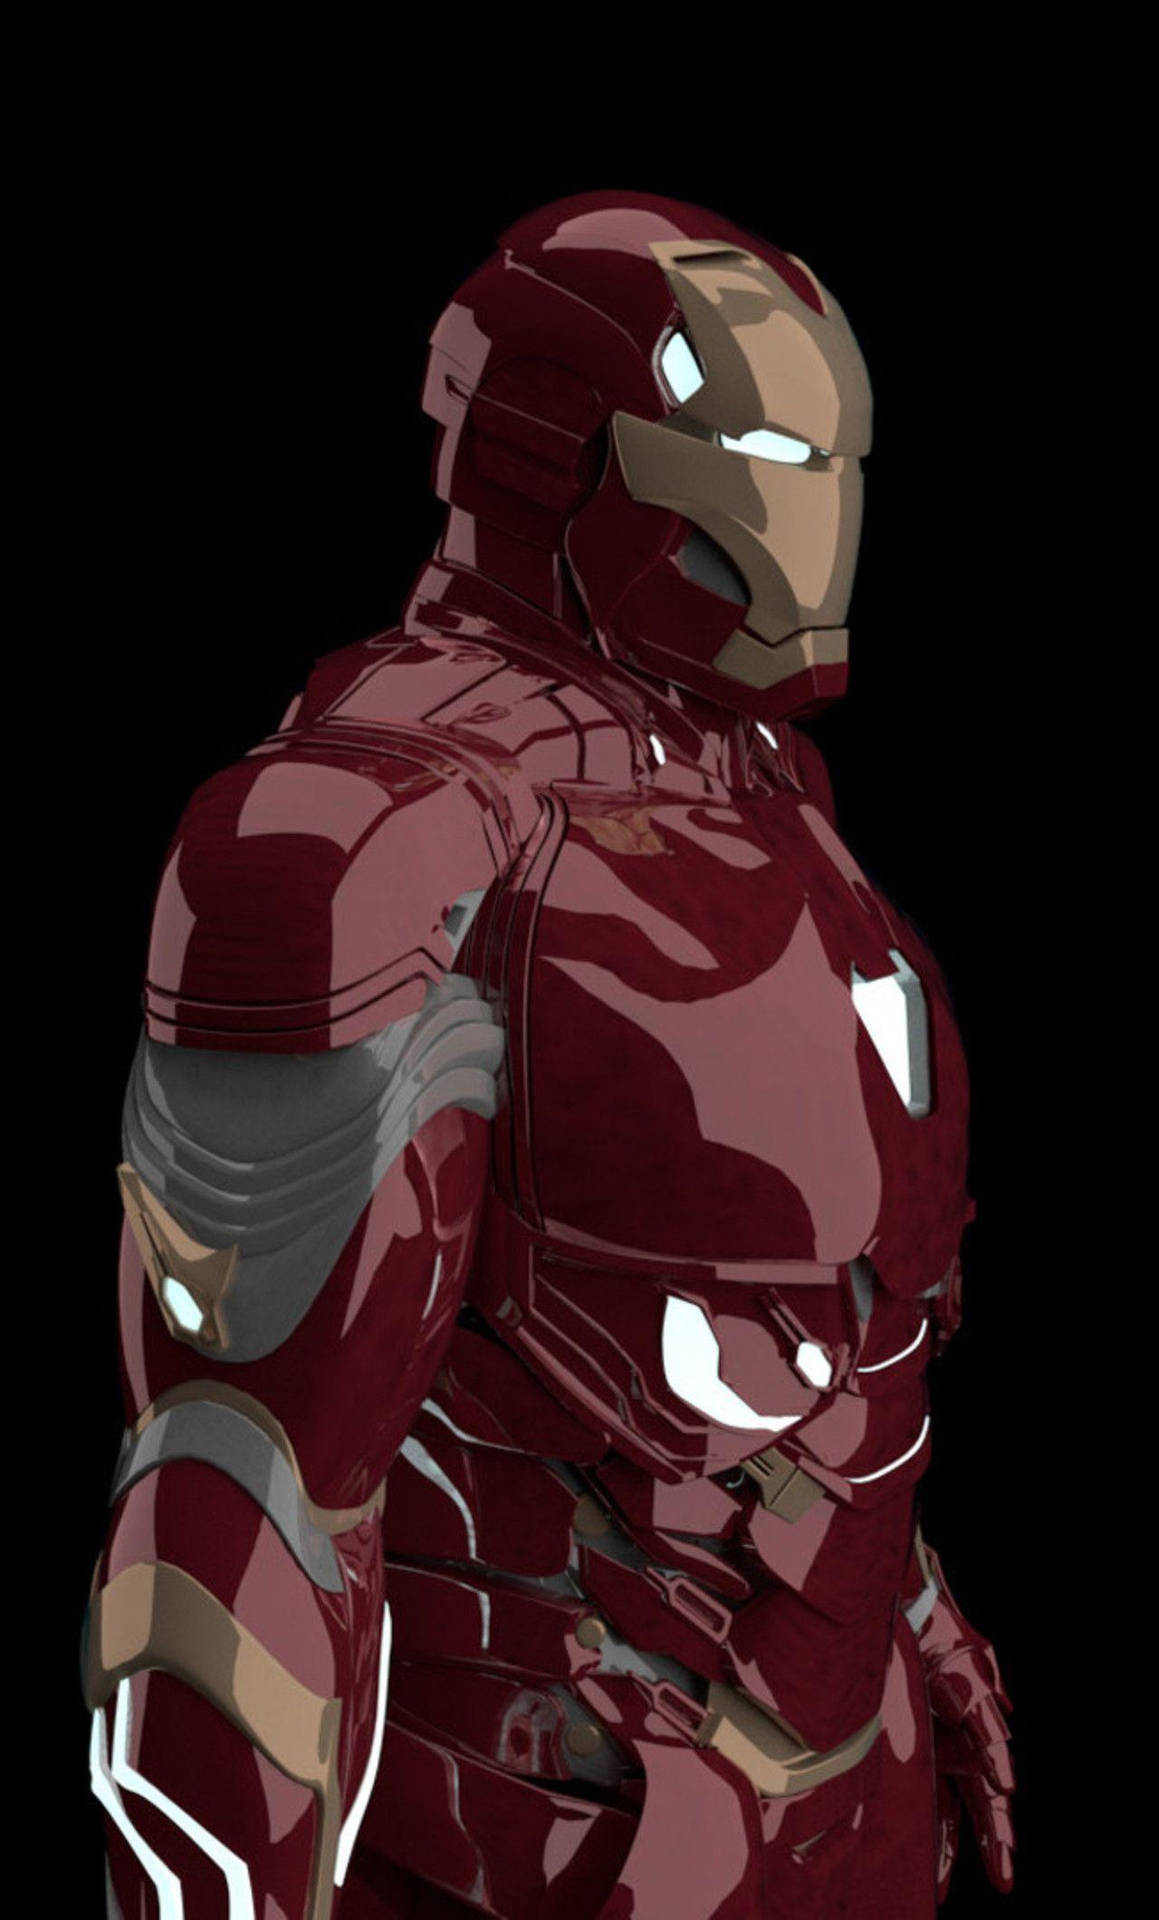 Shiny Suit Iron Man Iphone Background